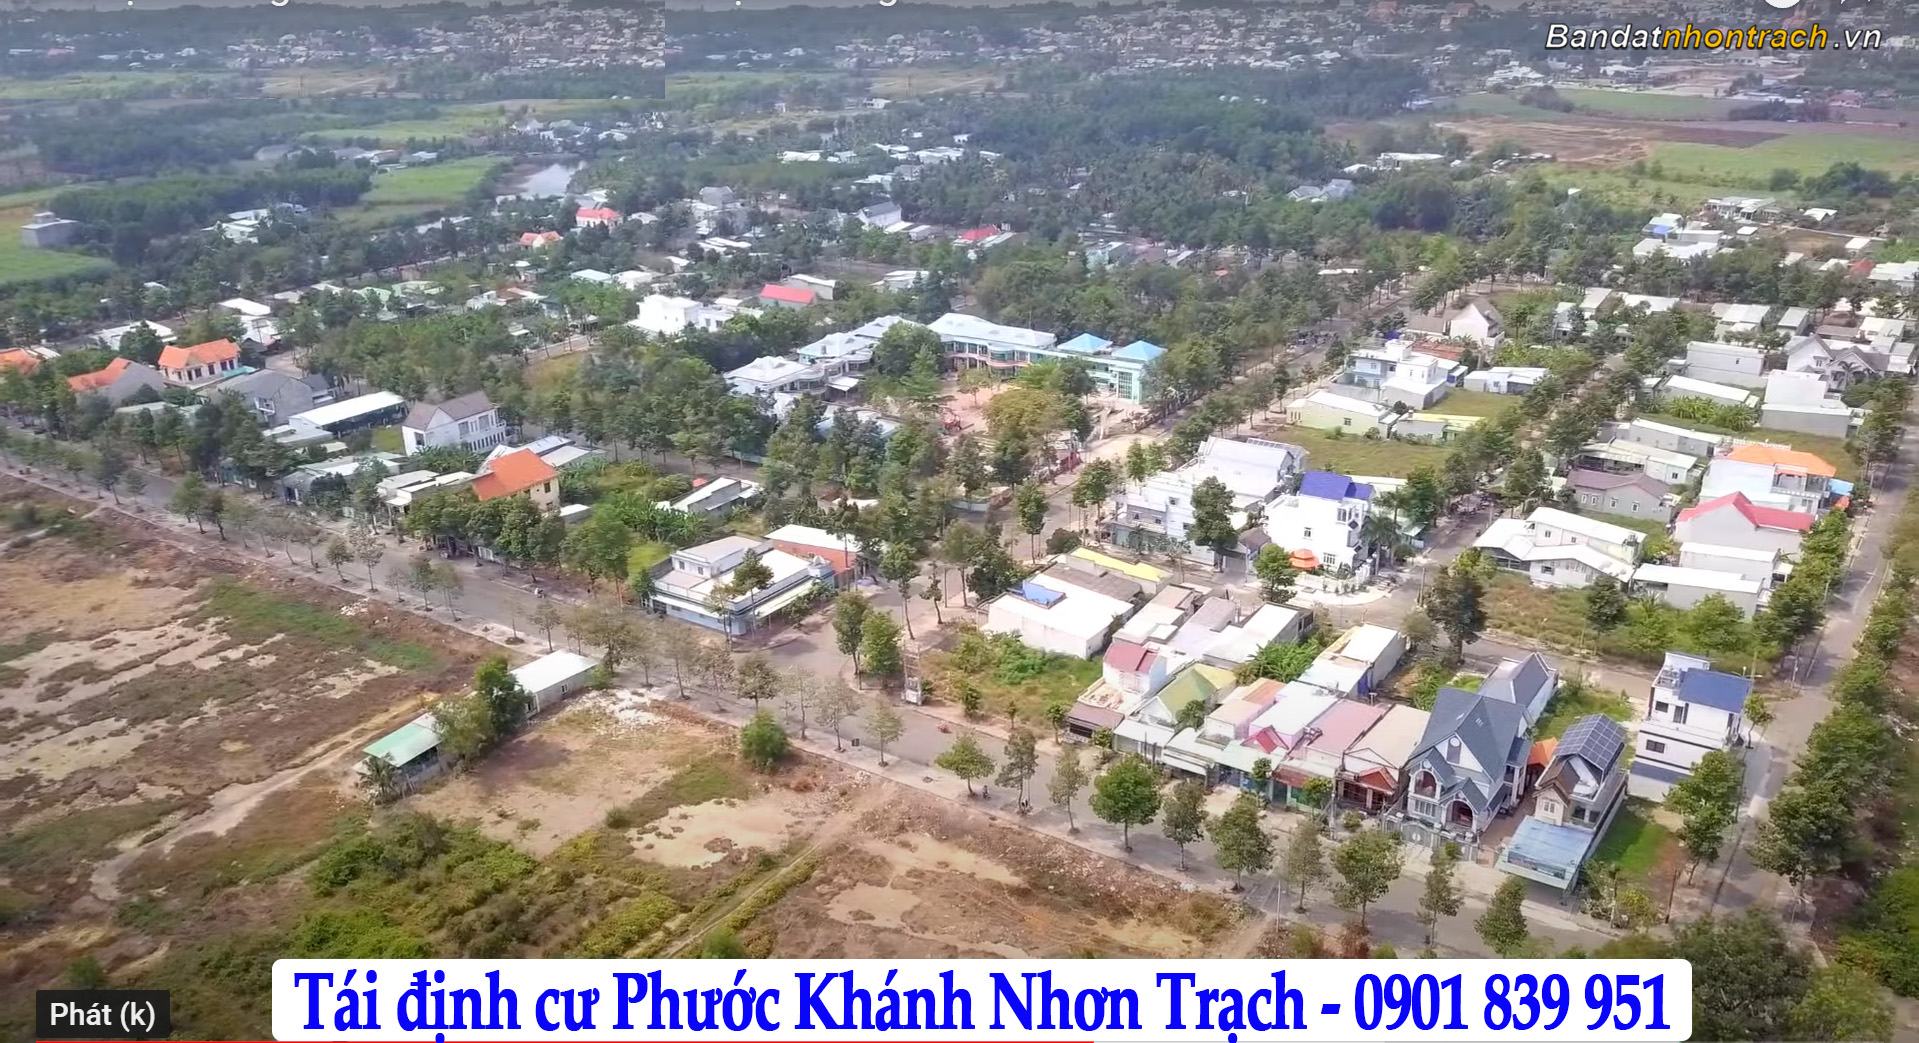 Hình thực tế khu tái định cư Phước Khánh Nhơn Trạch